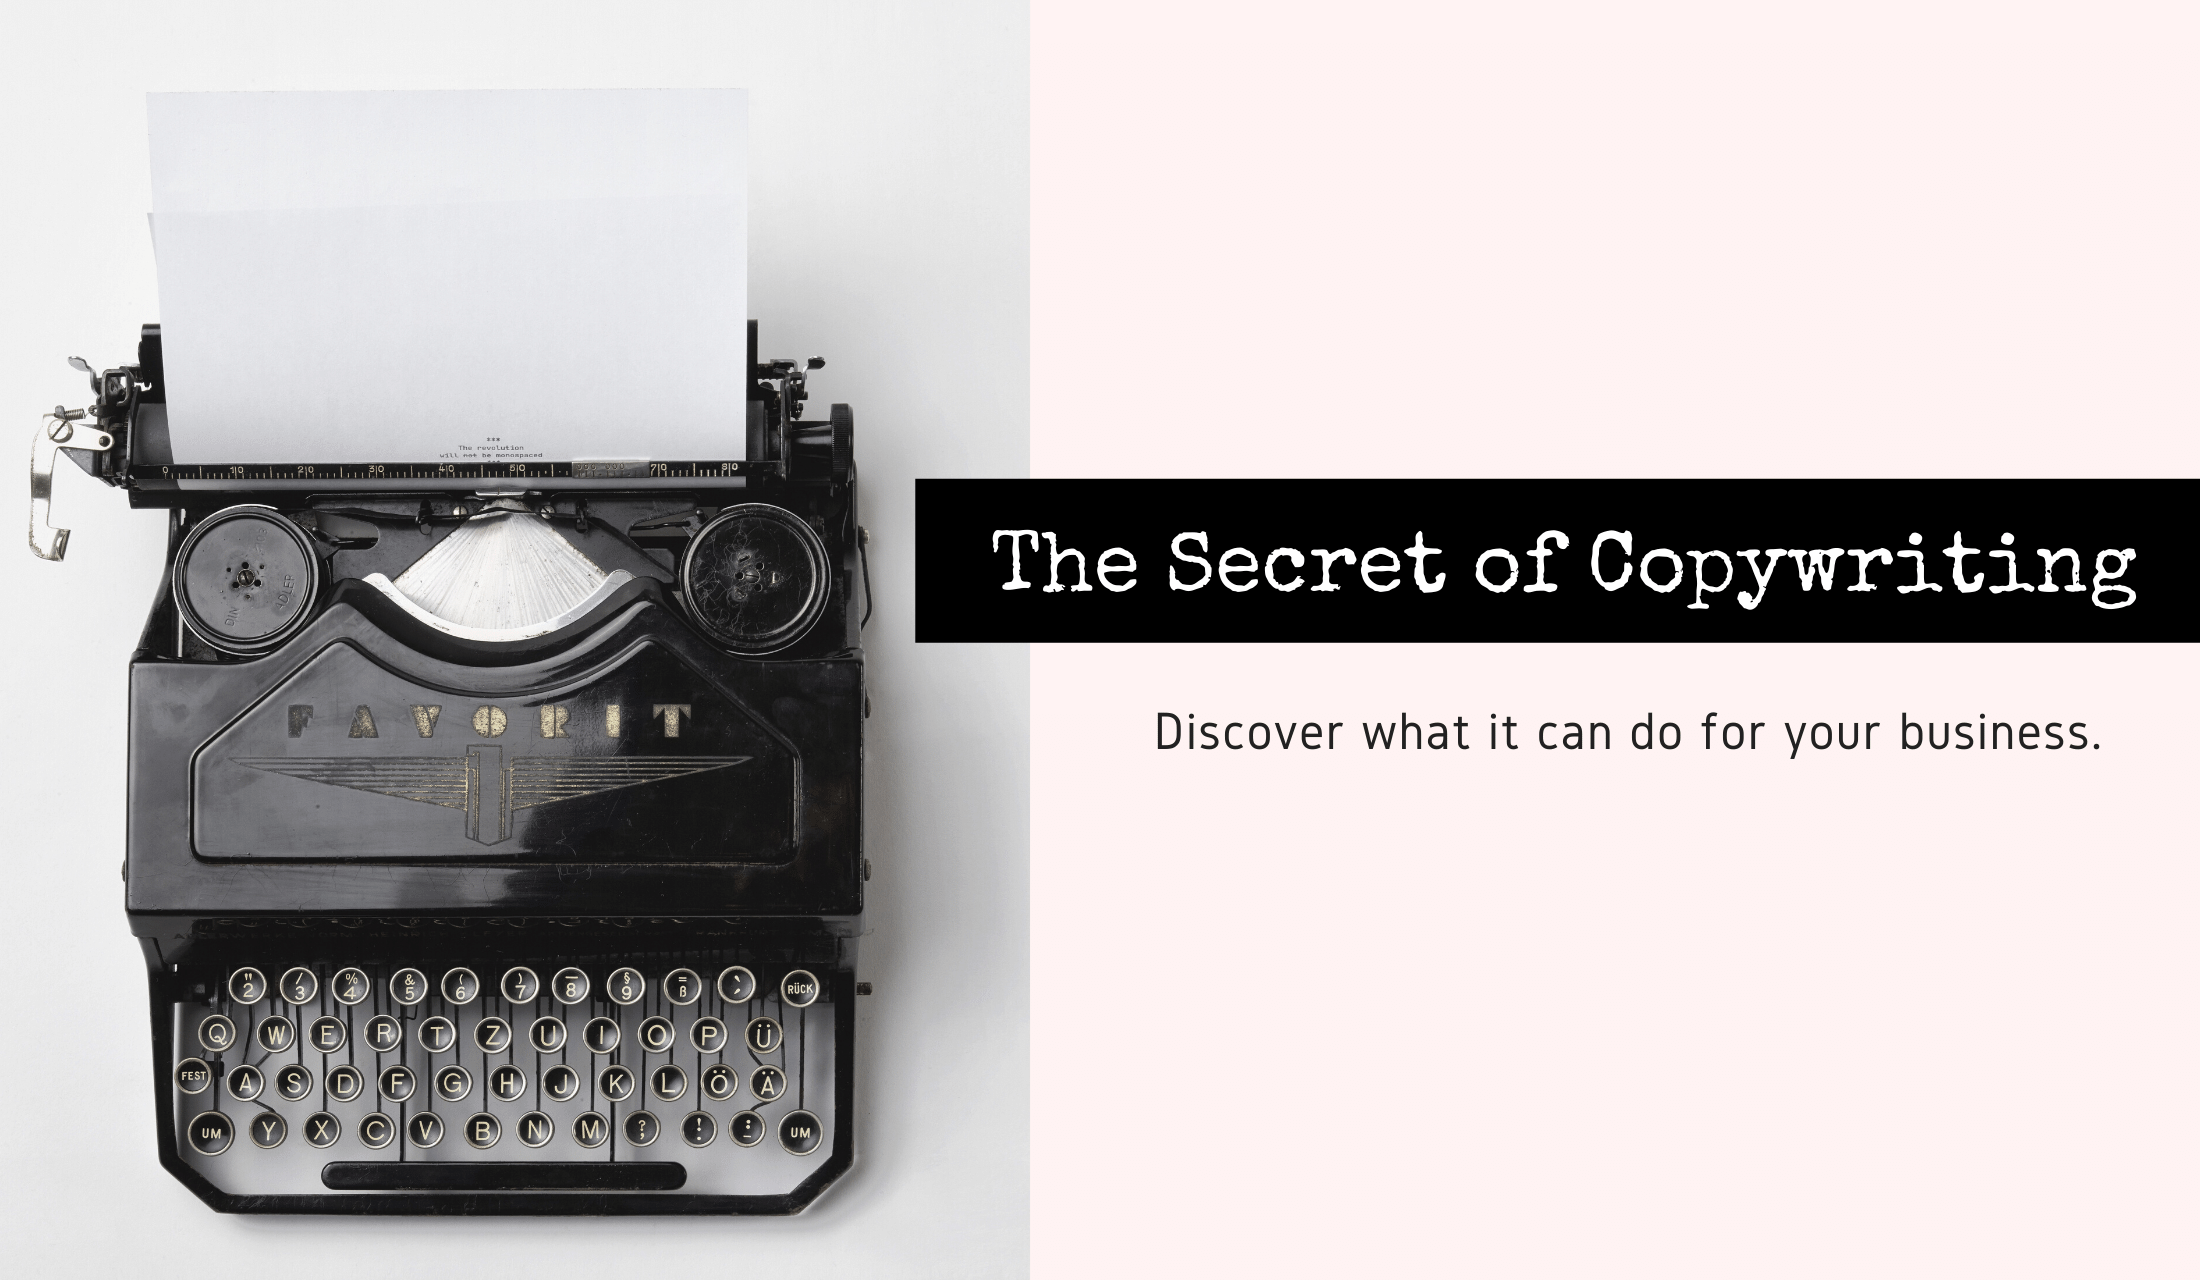 The secret of copywriting